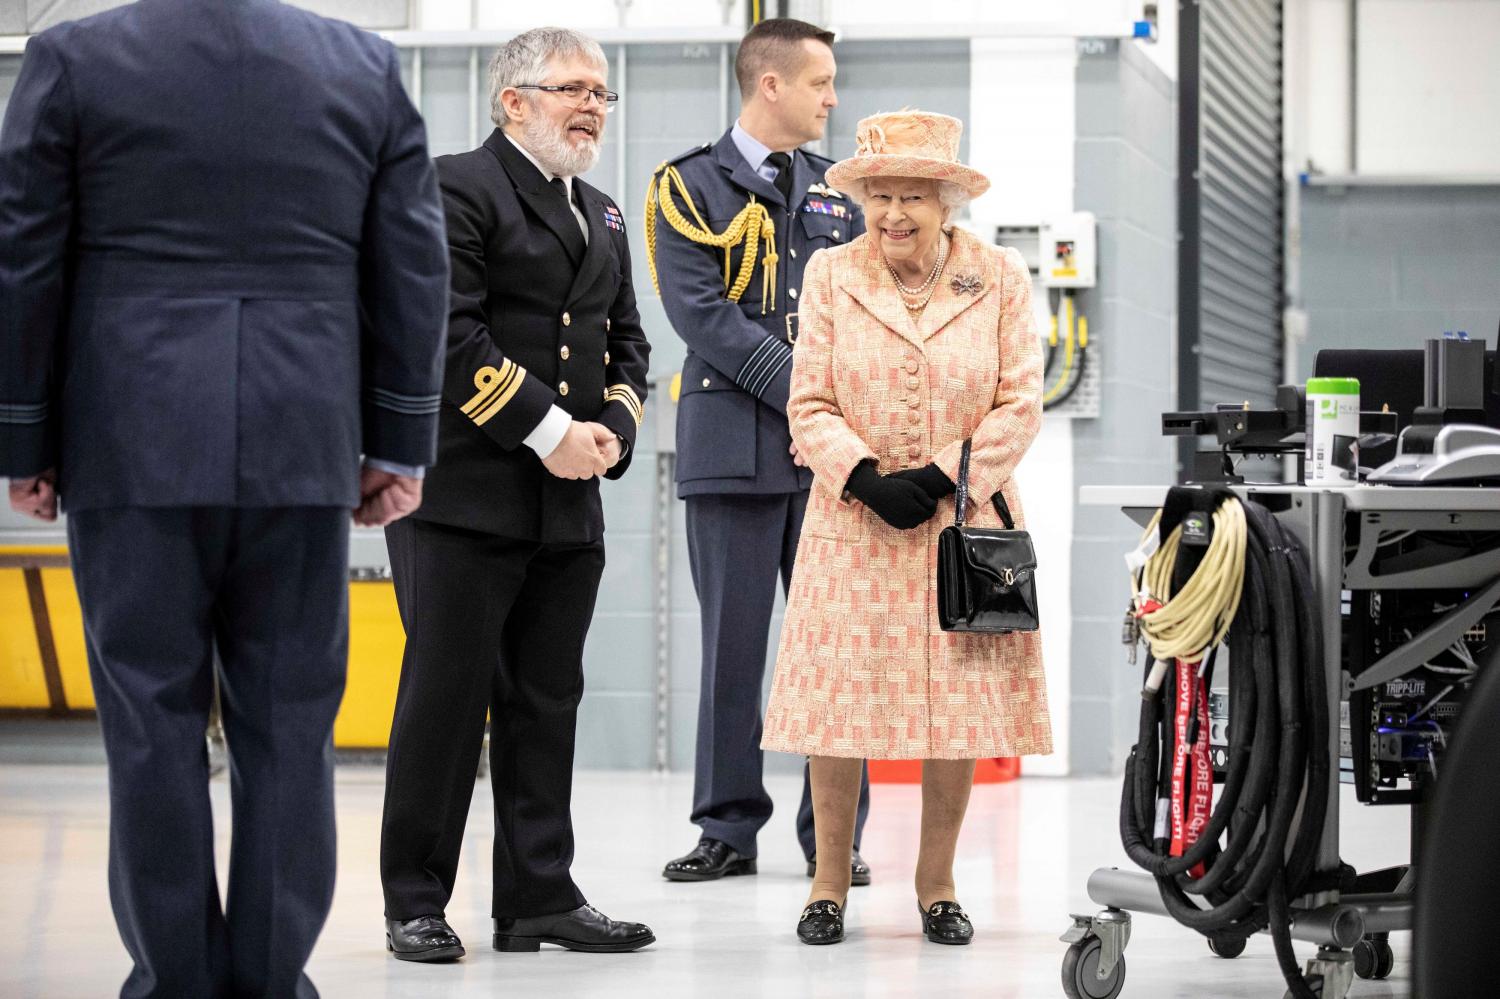 Isabel lució un vestido color durazno y se mostró sonriente durante el recorrido por las instalaciones de la Fuerza Aérea.